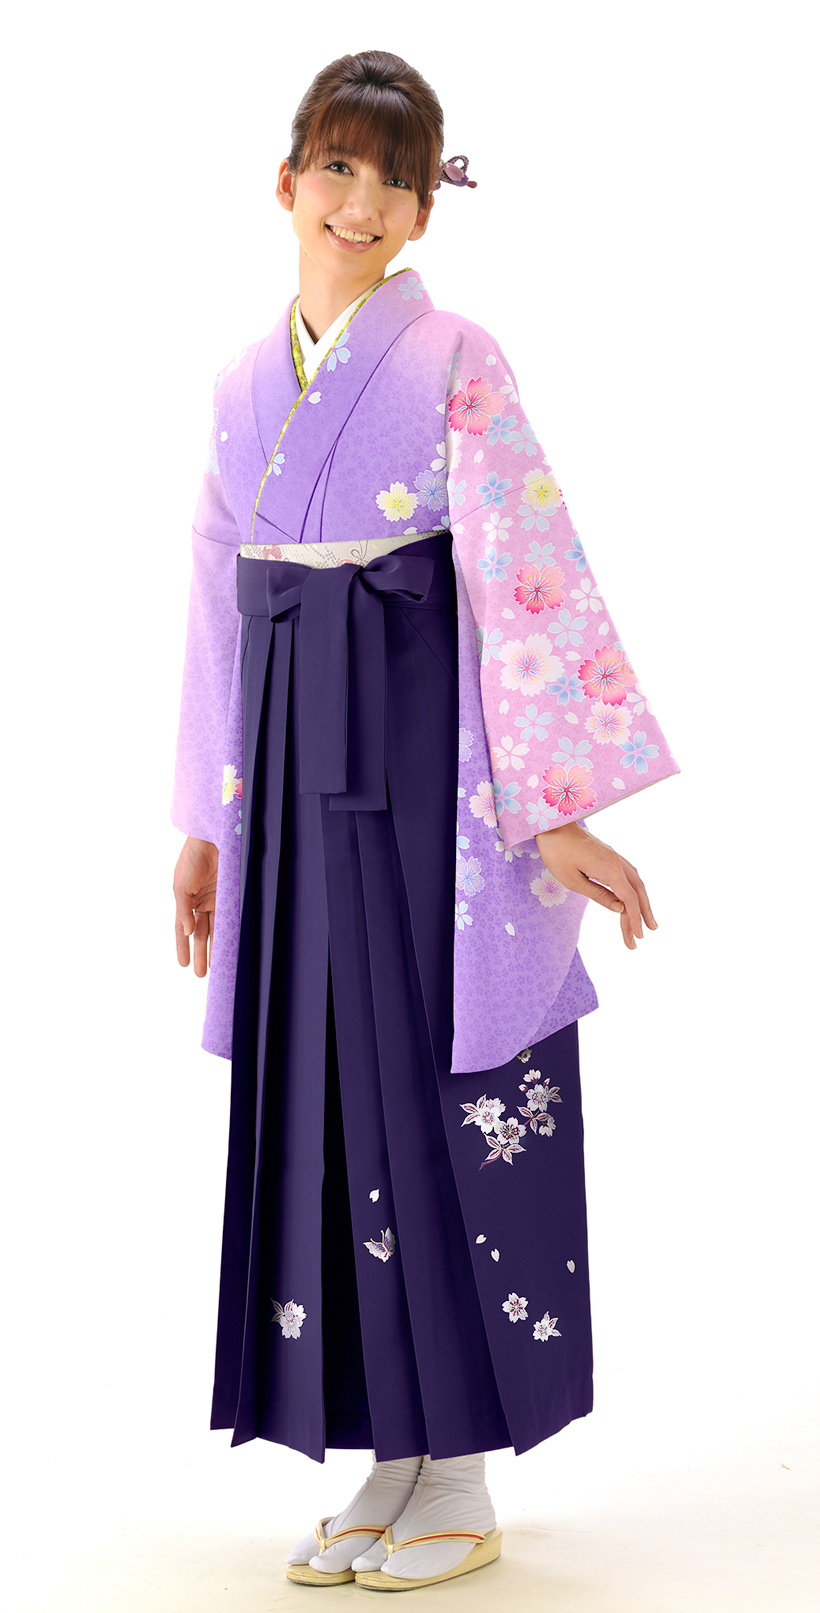 かわいらしい紫色袴スタイル